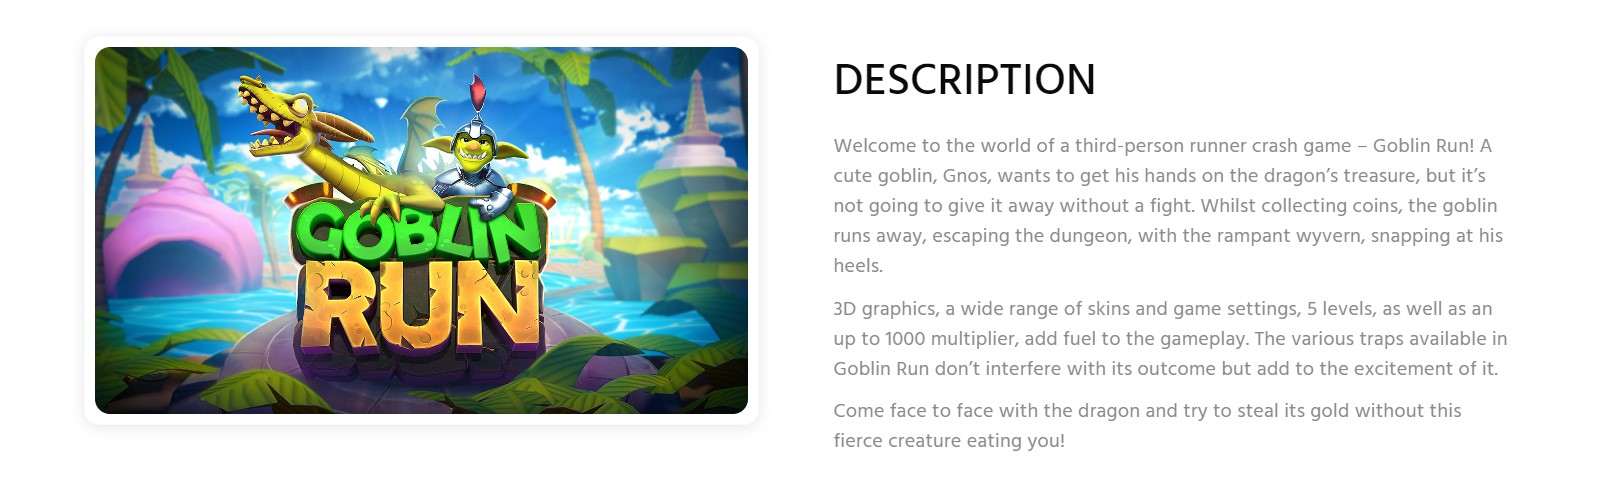 Goblin Run oyun açıklaması